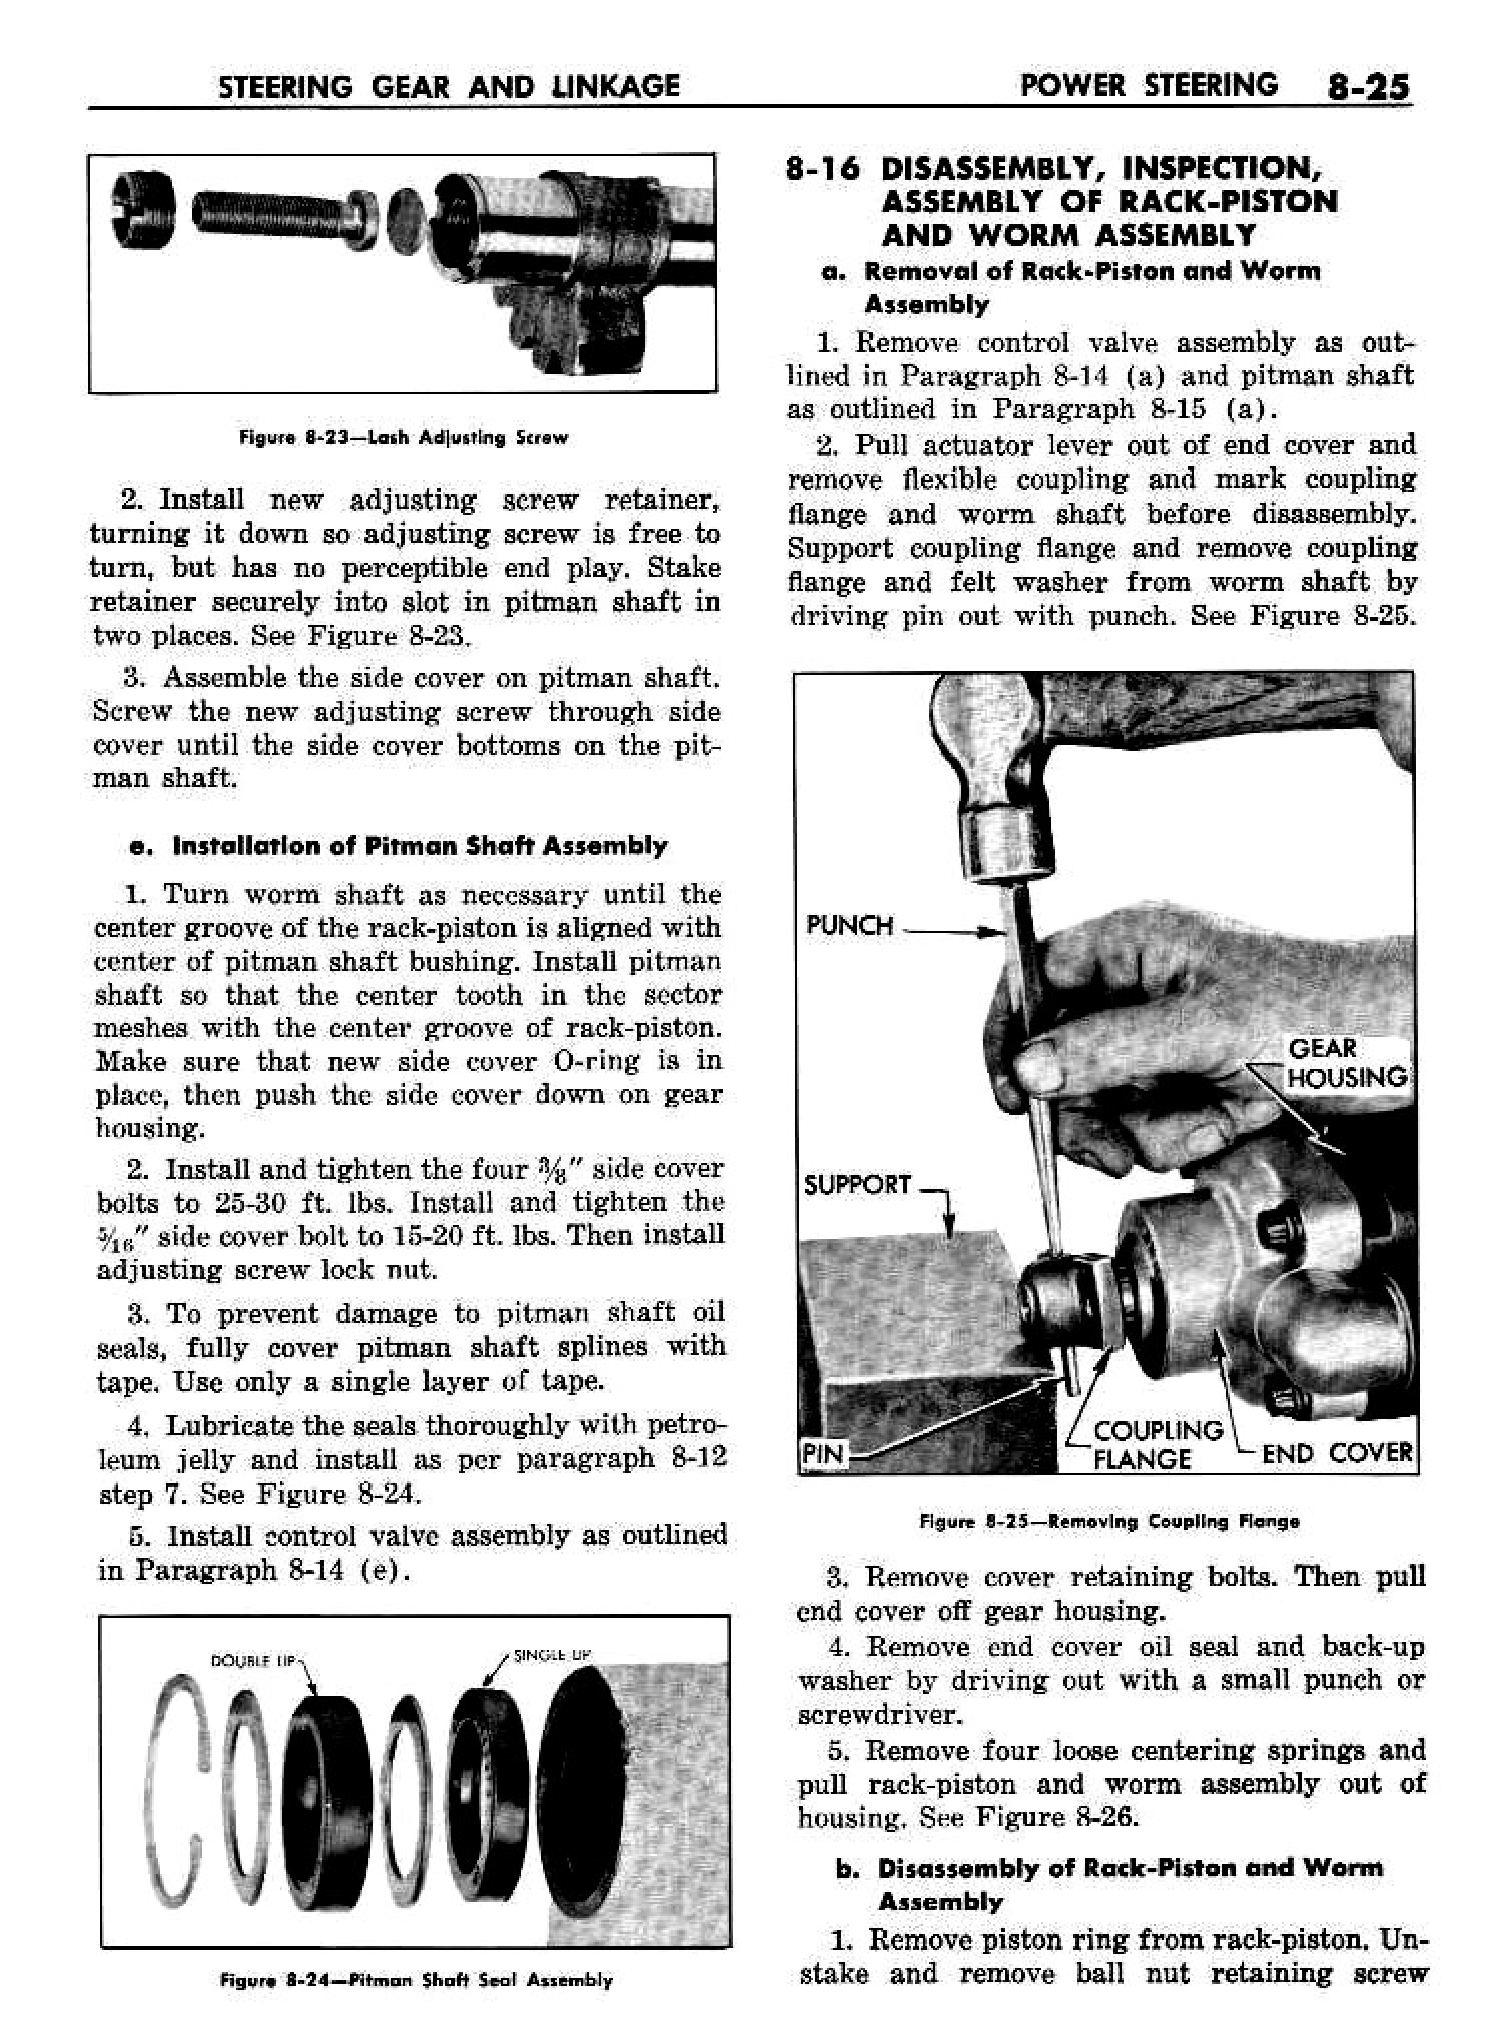 n_09 1958 Buick Shop Manual - Steering_25.jpg